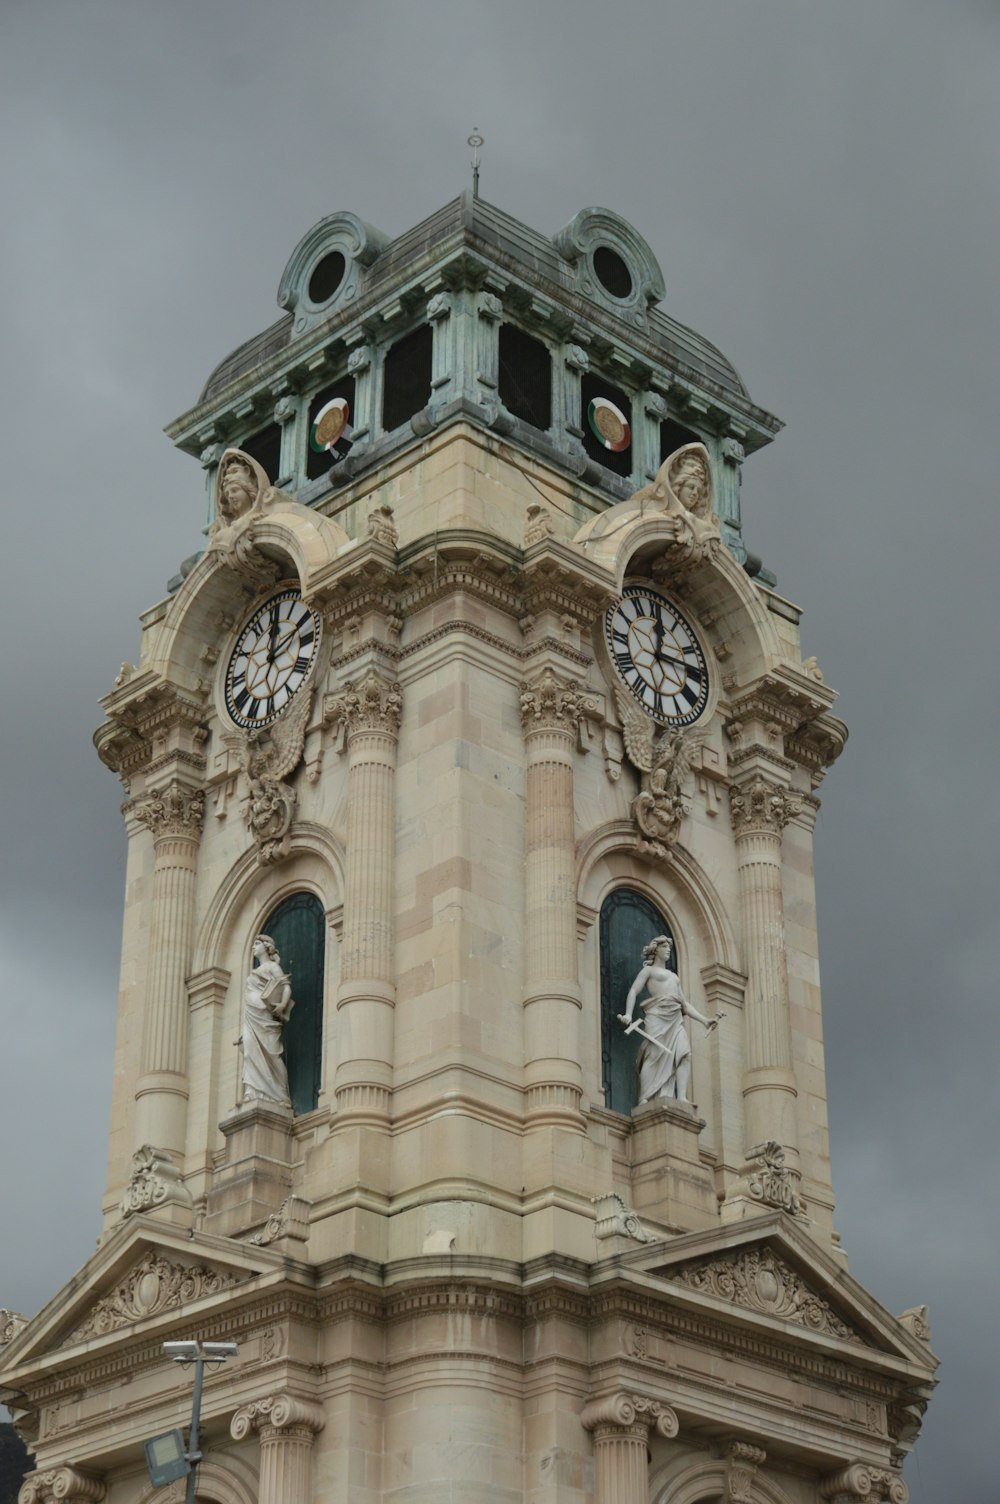 une haute tour d’horloge avec une horloge sur chacun de ses côtés